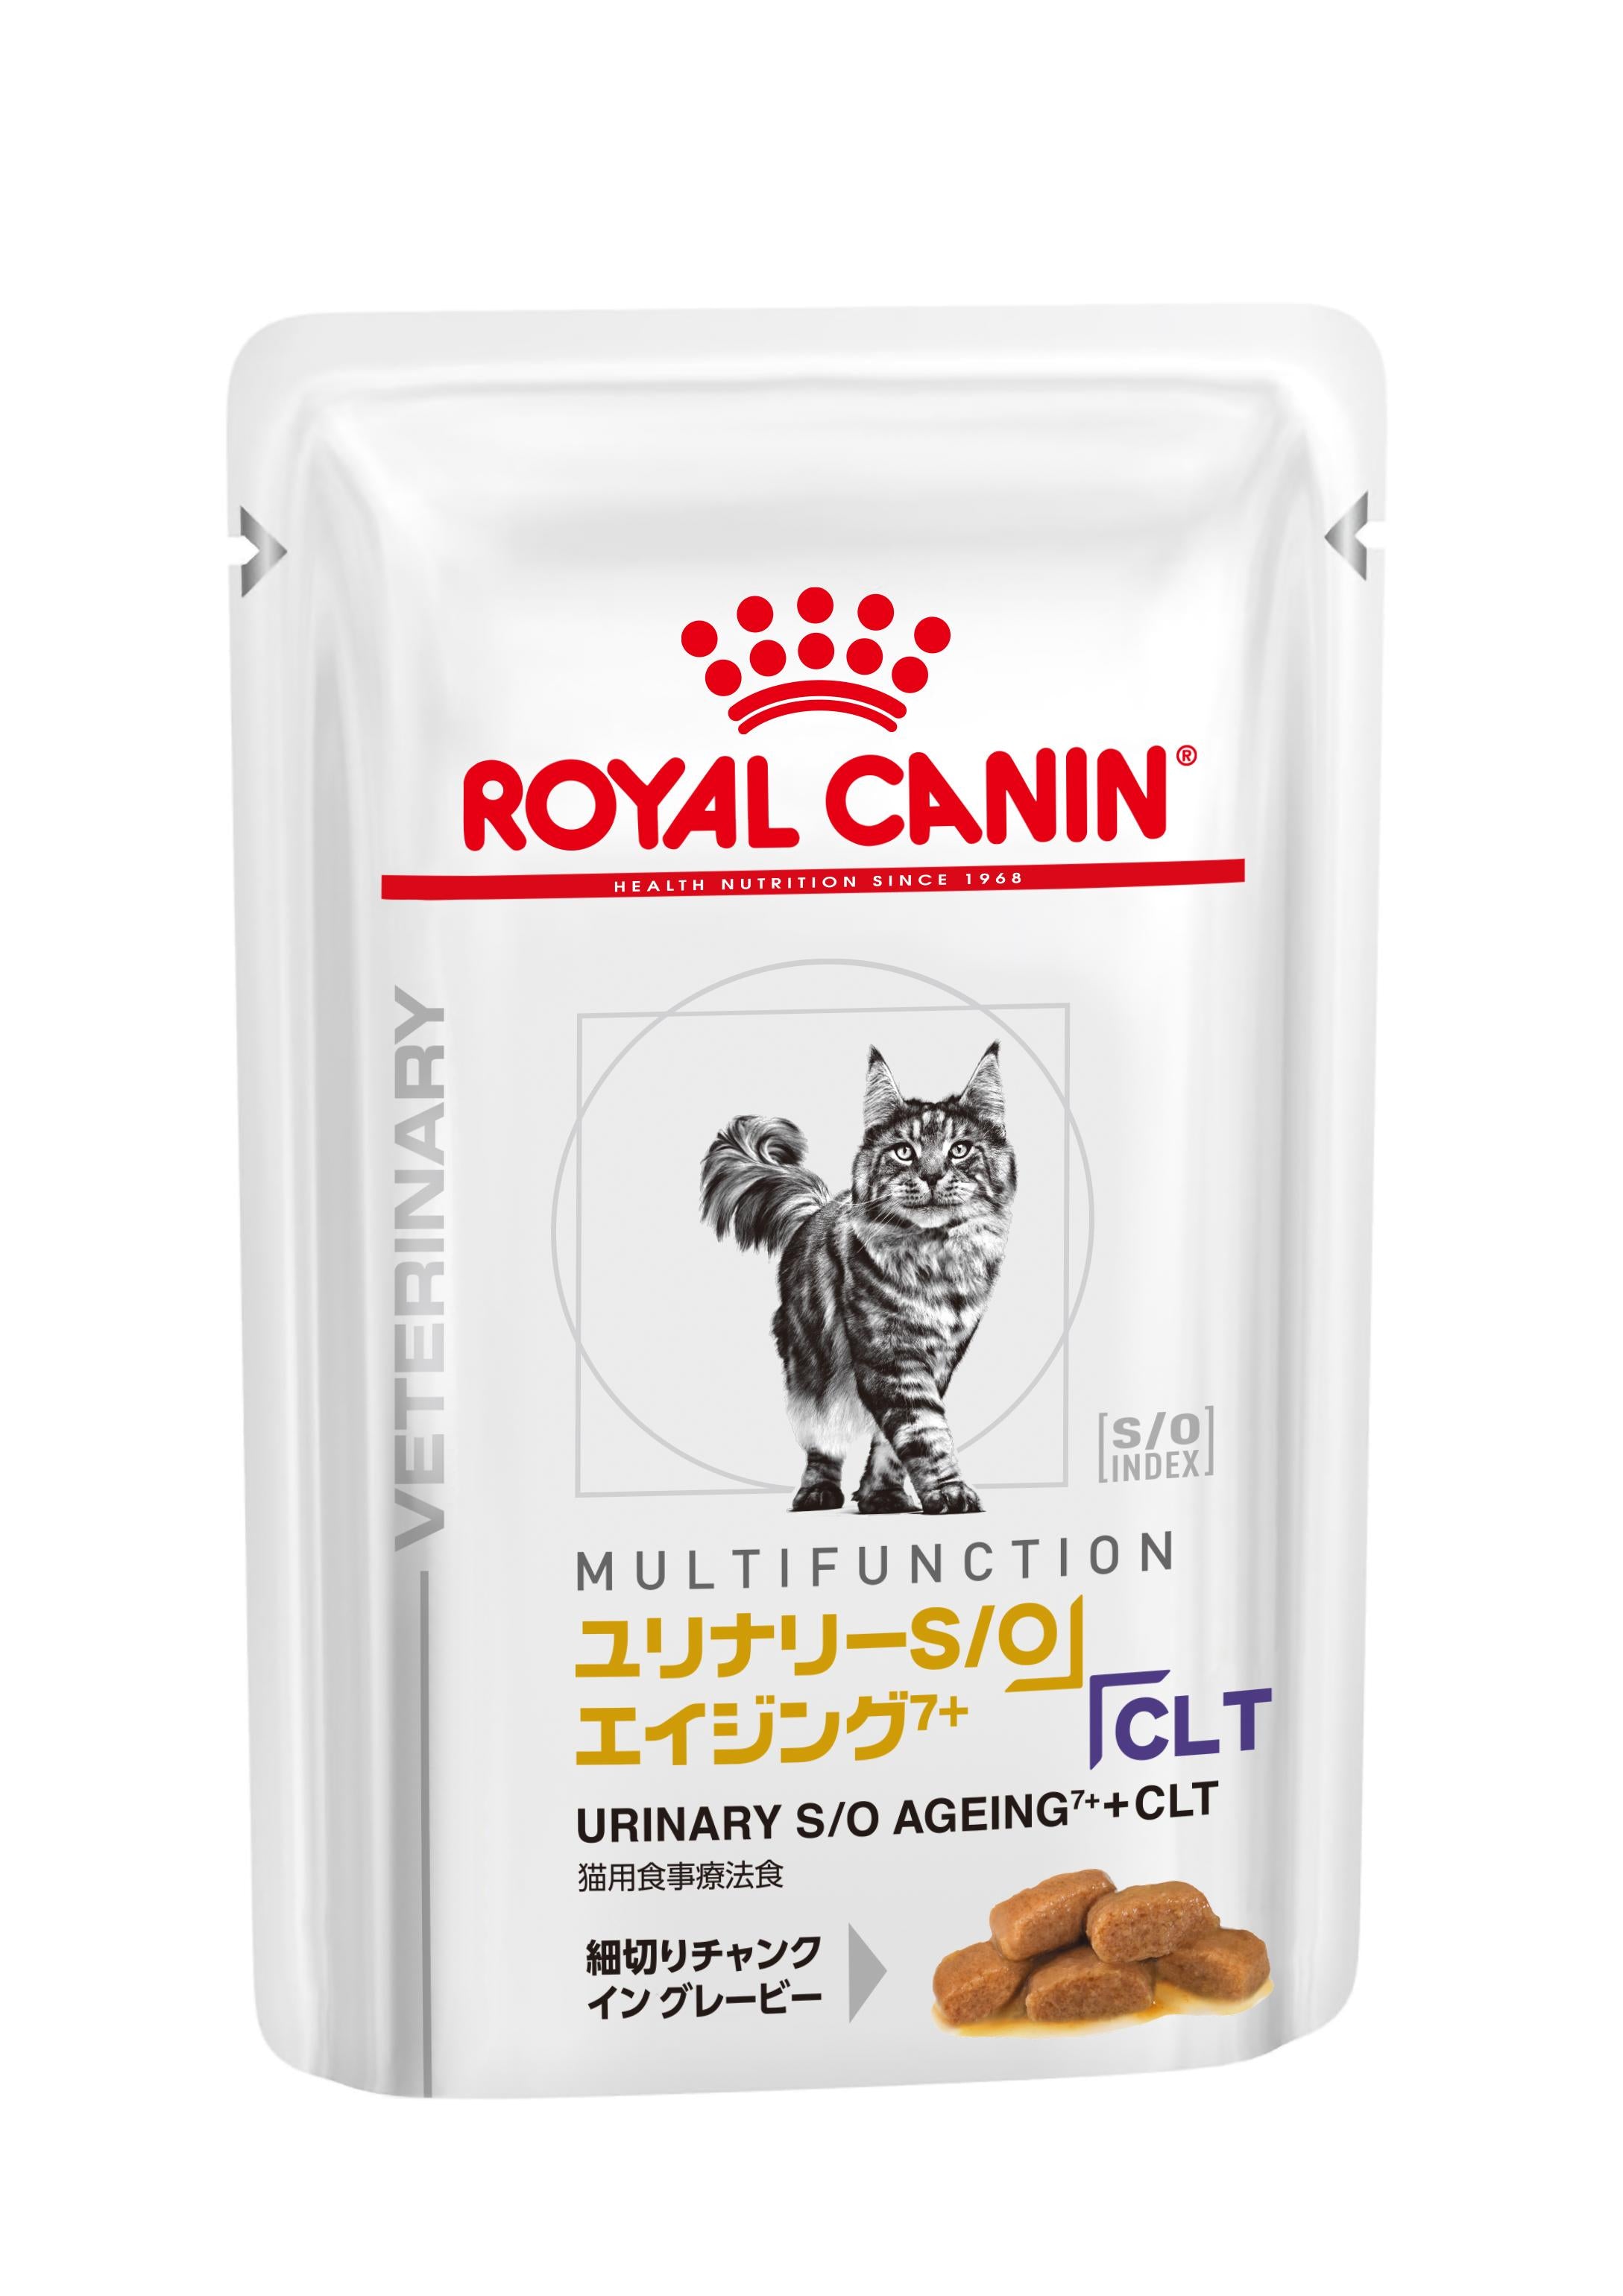 フランスロイヤルカナン 猫用 ユリナリーS/O エイジング7+  CLT 2kg 2袋